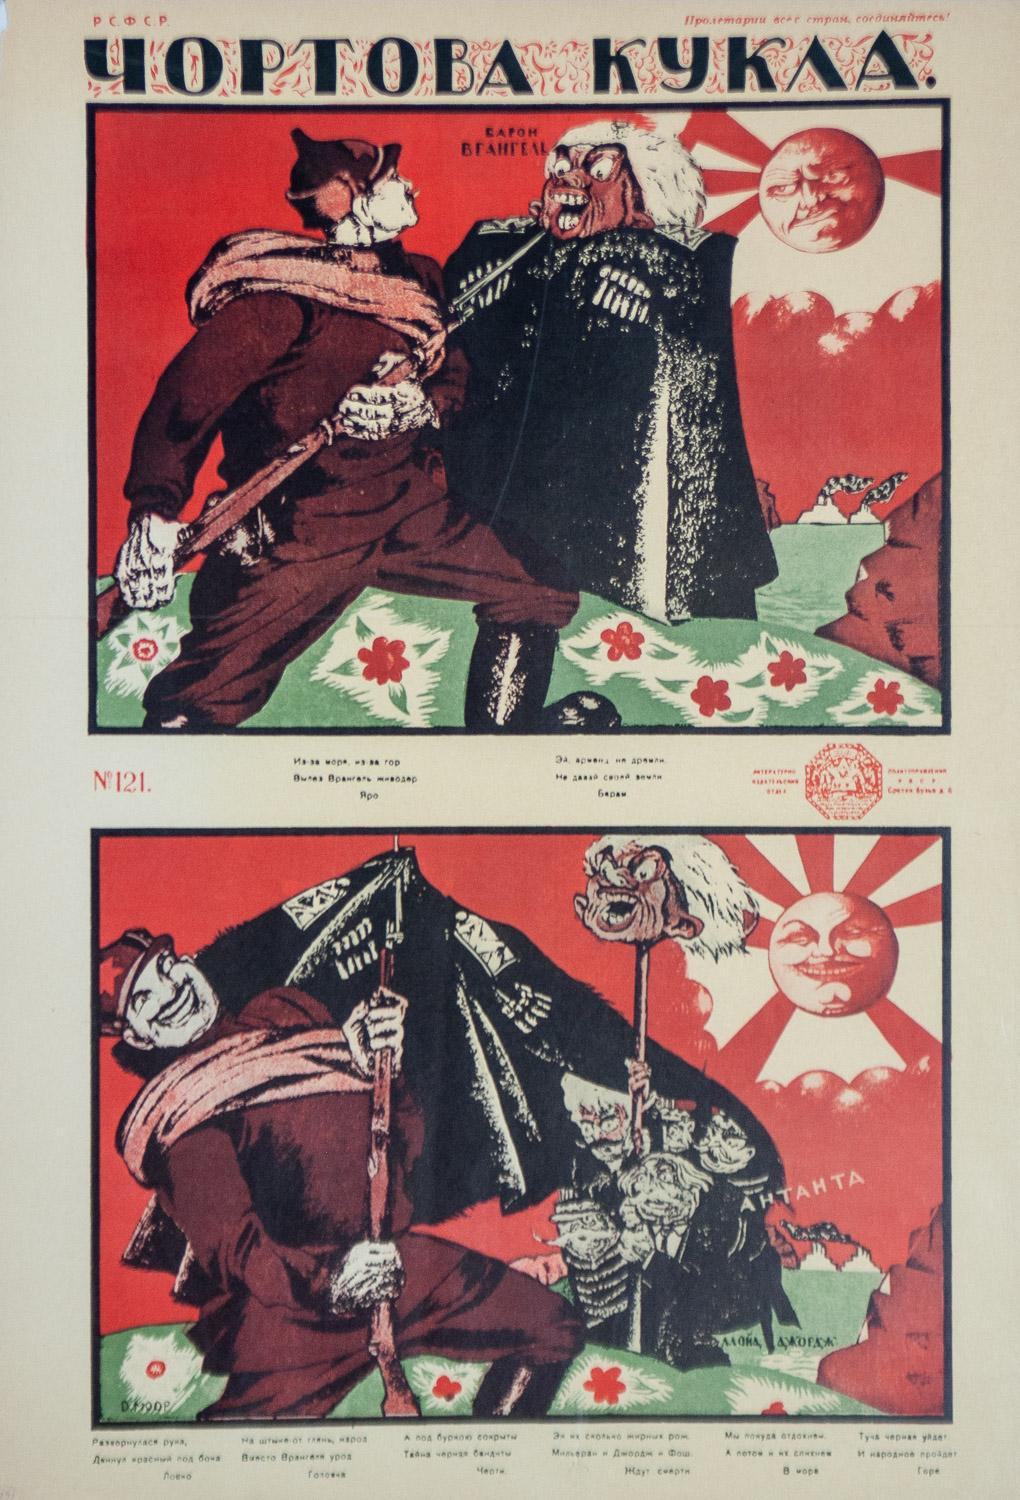 1920 propaganda